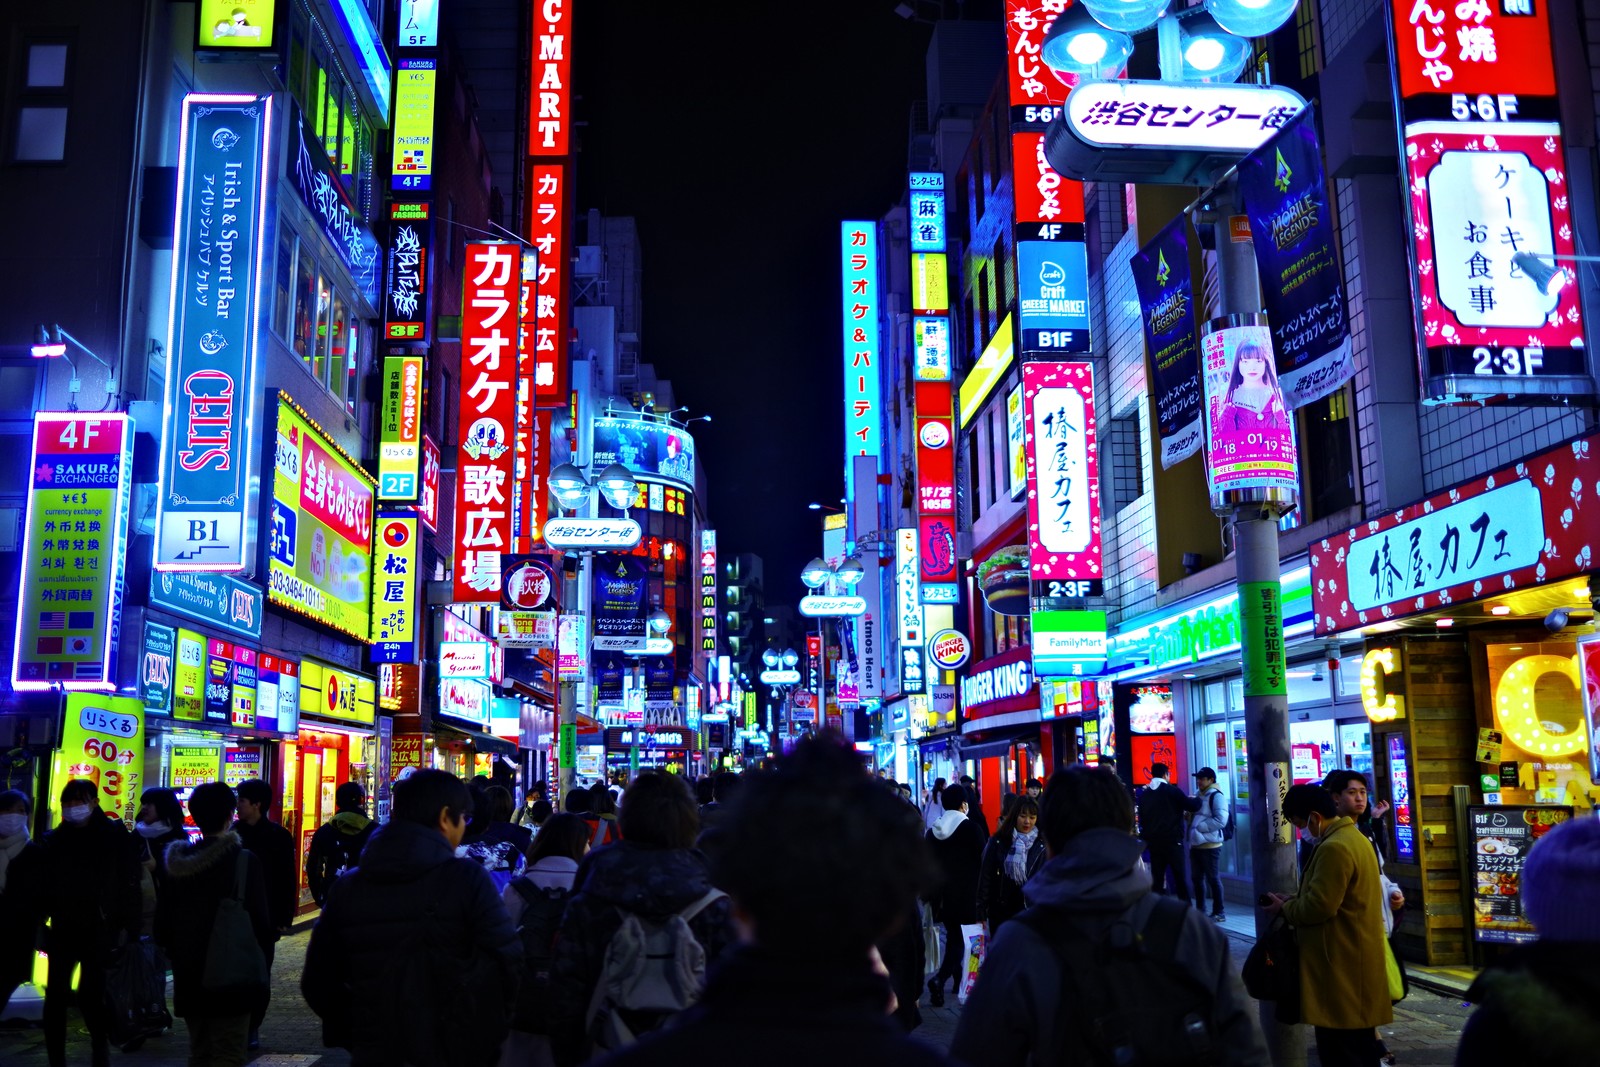 So sieht es in Shibuya normalerweise nachts aus